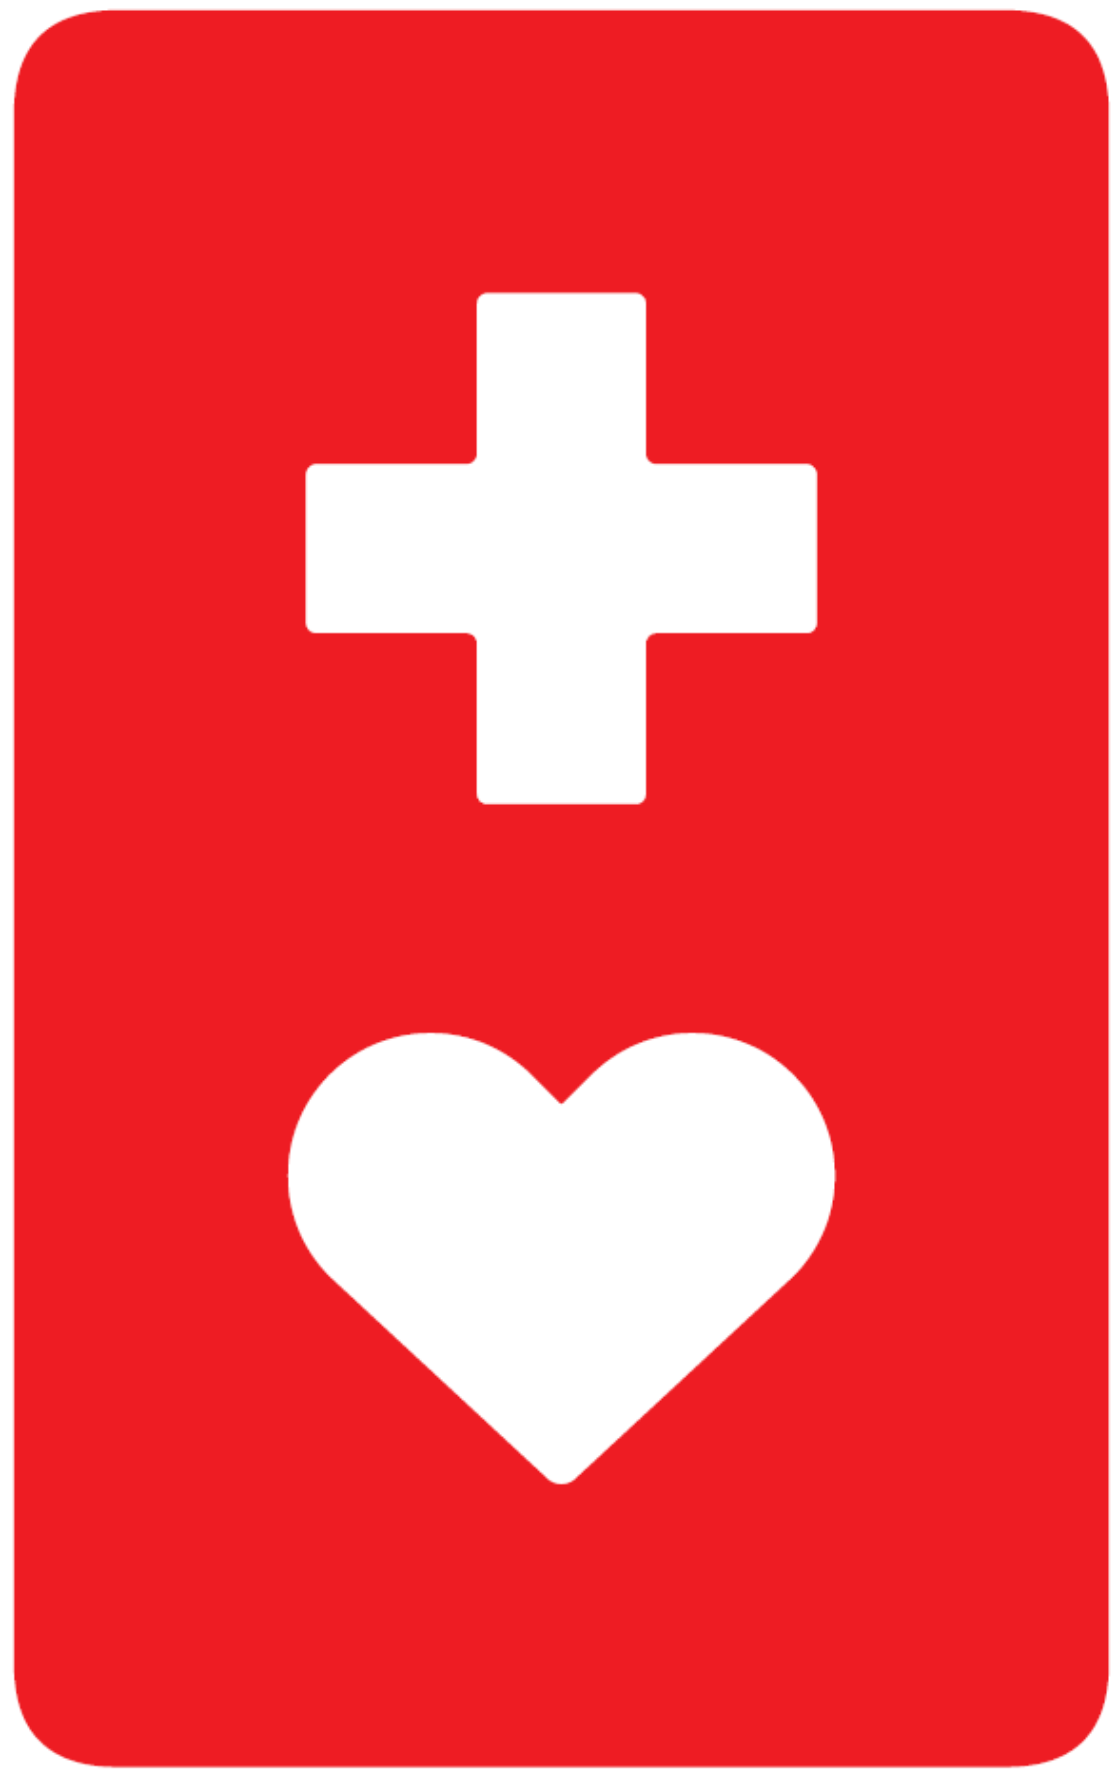 長方形の形で赤地に白地で十字とハートが描かれたヘルプマーク